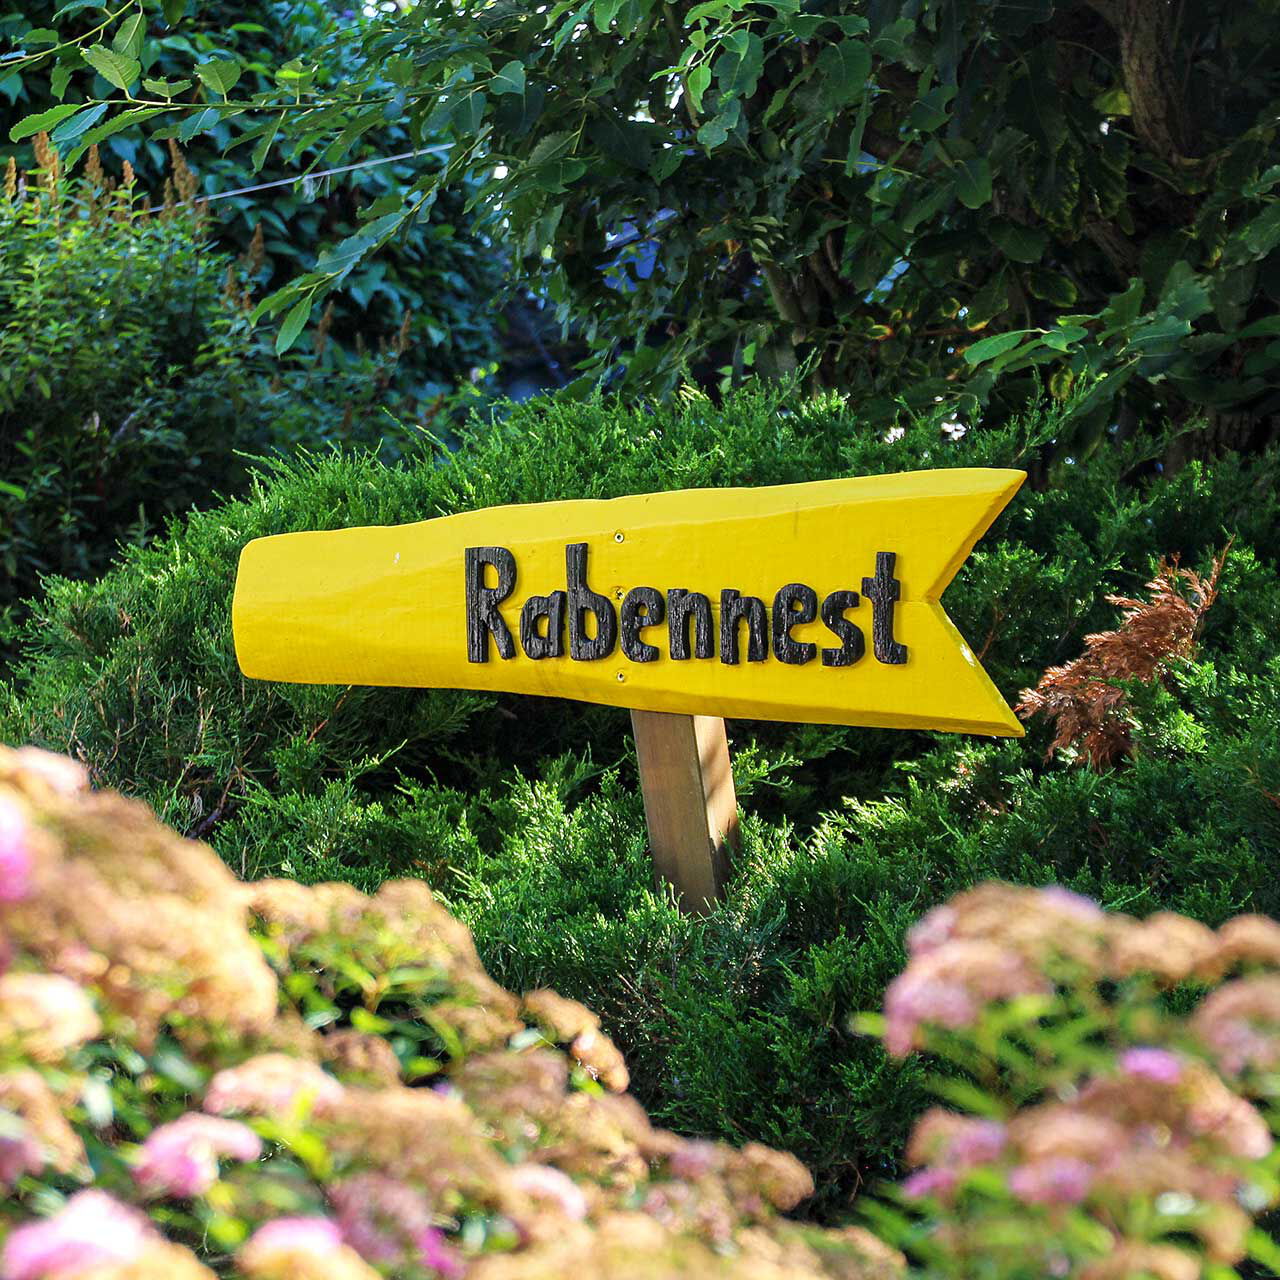 Ein gelber Wegweiser im Garten mit einer schwarzen Aufschrift Rabennest.